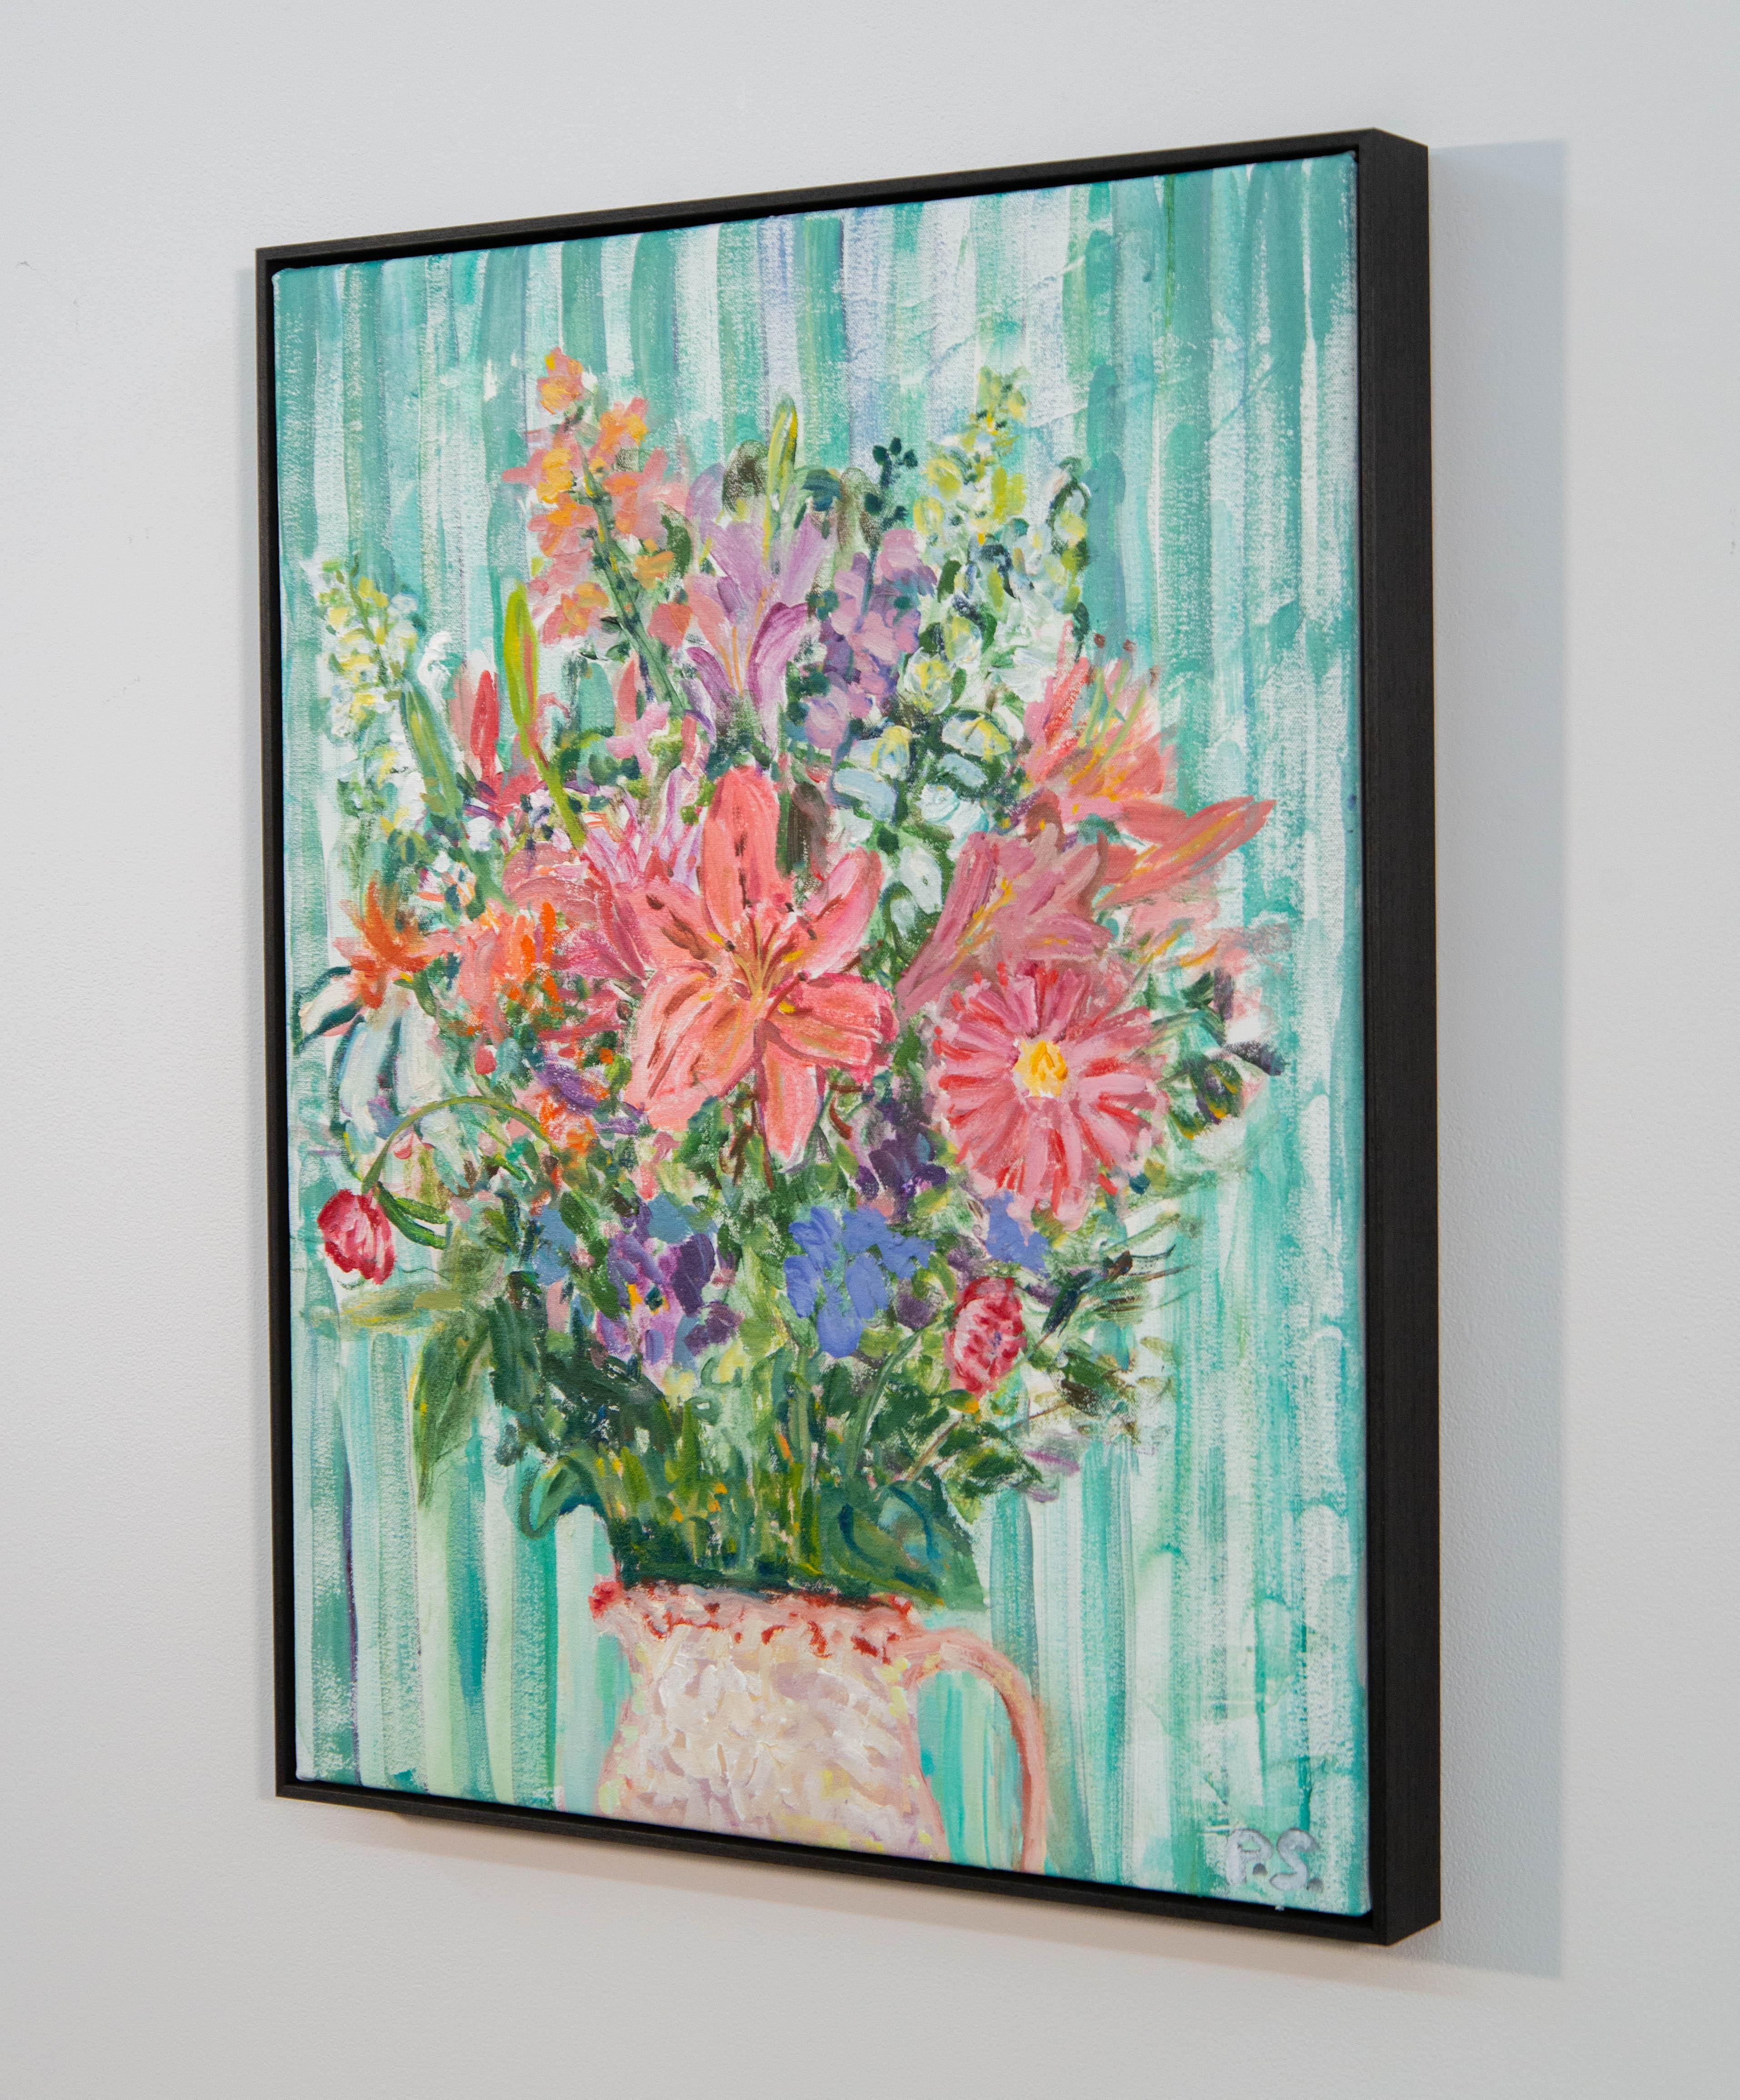 Fresh Flowers - contemporain, nature morte florale, acrylique et huile sur toile - Contemporain Painting par Pat Service